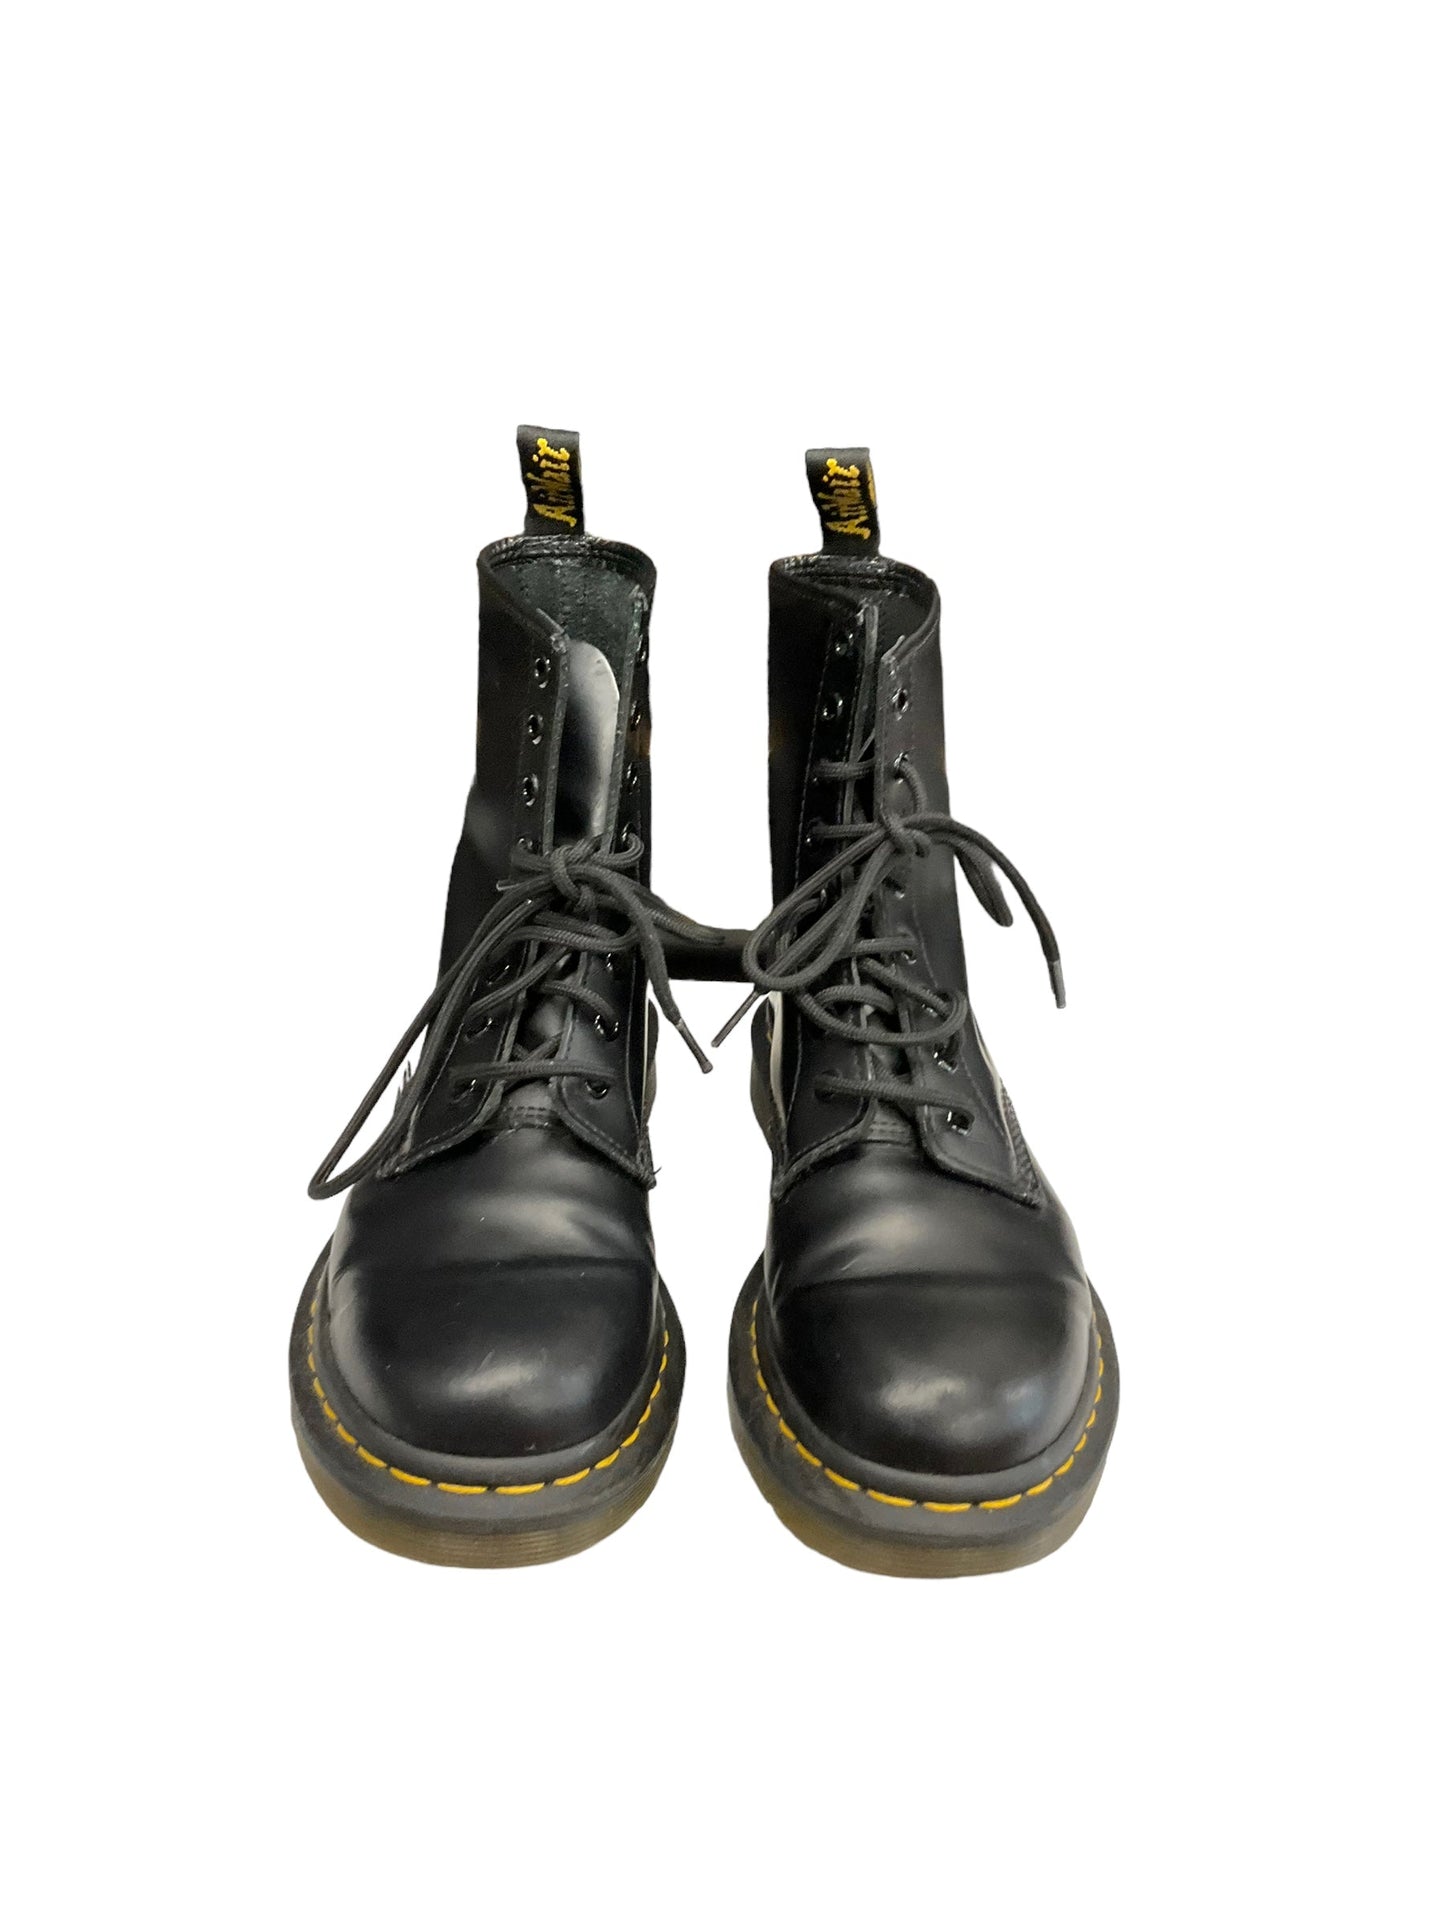 Black Boots Combat Dr Martens, Size 8